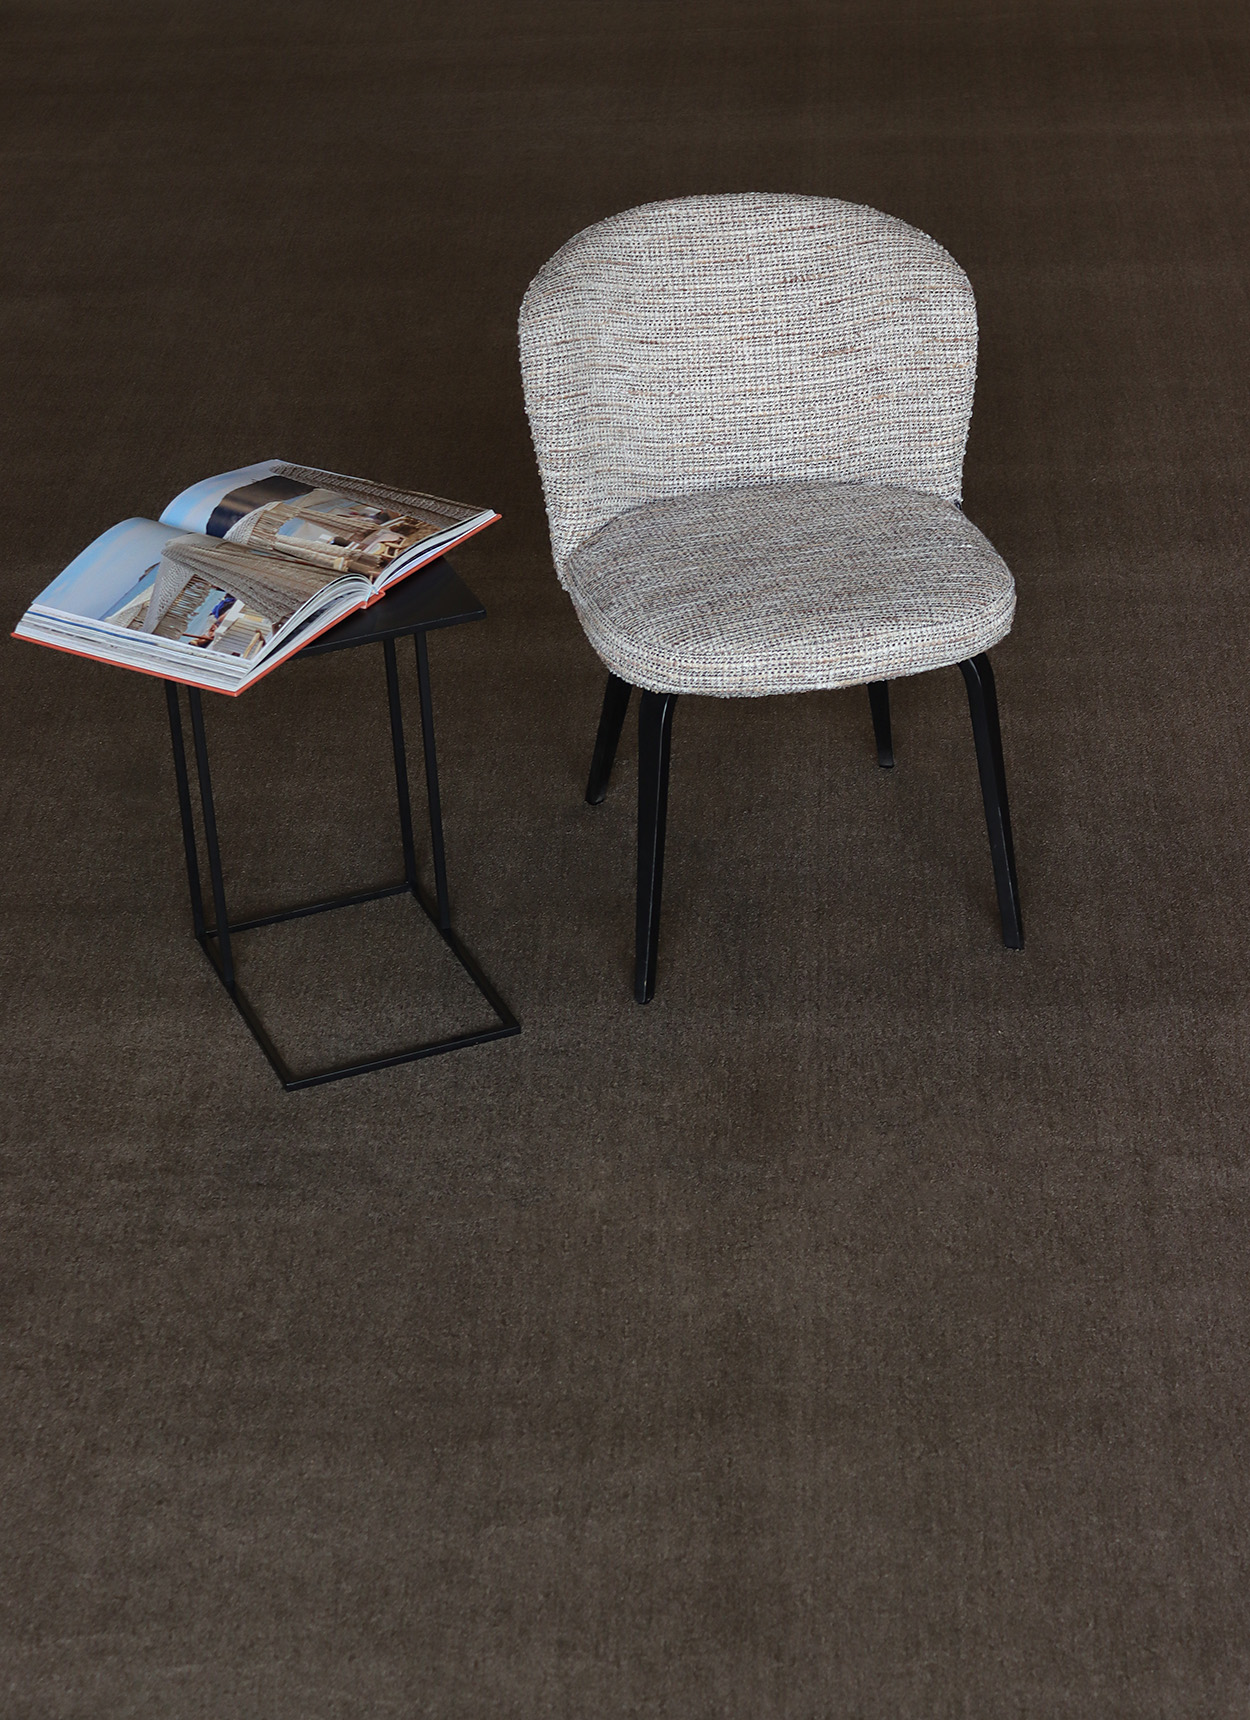 Foto: 152 Interfloor Elite kleur187 beigestoel zithoek leeshoek tapijtkwaliteit superzacht